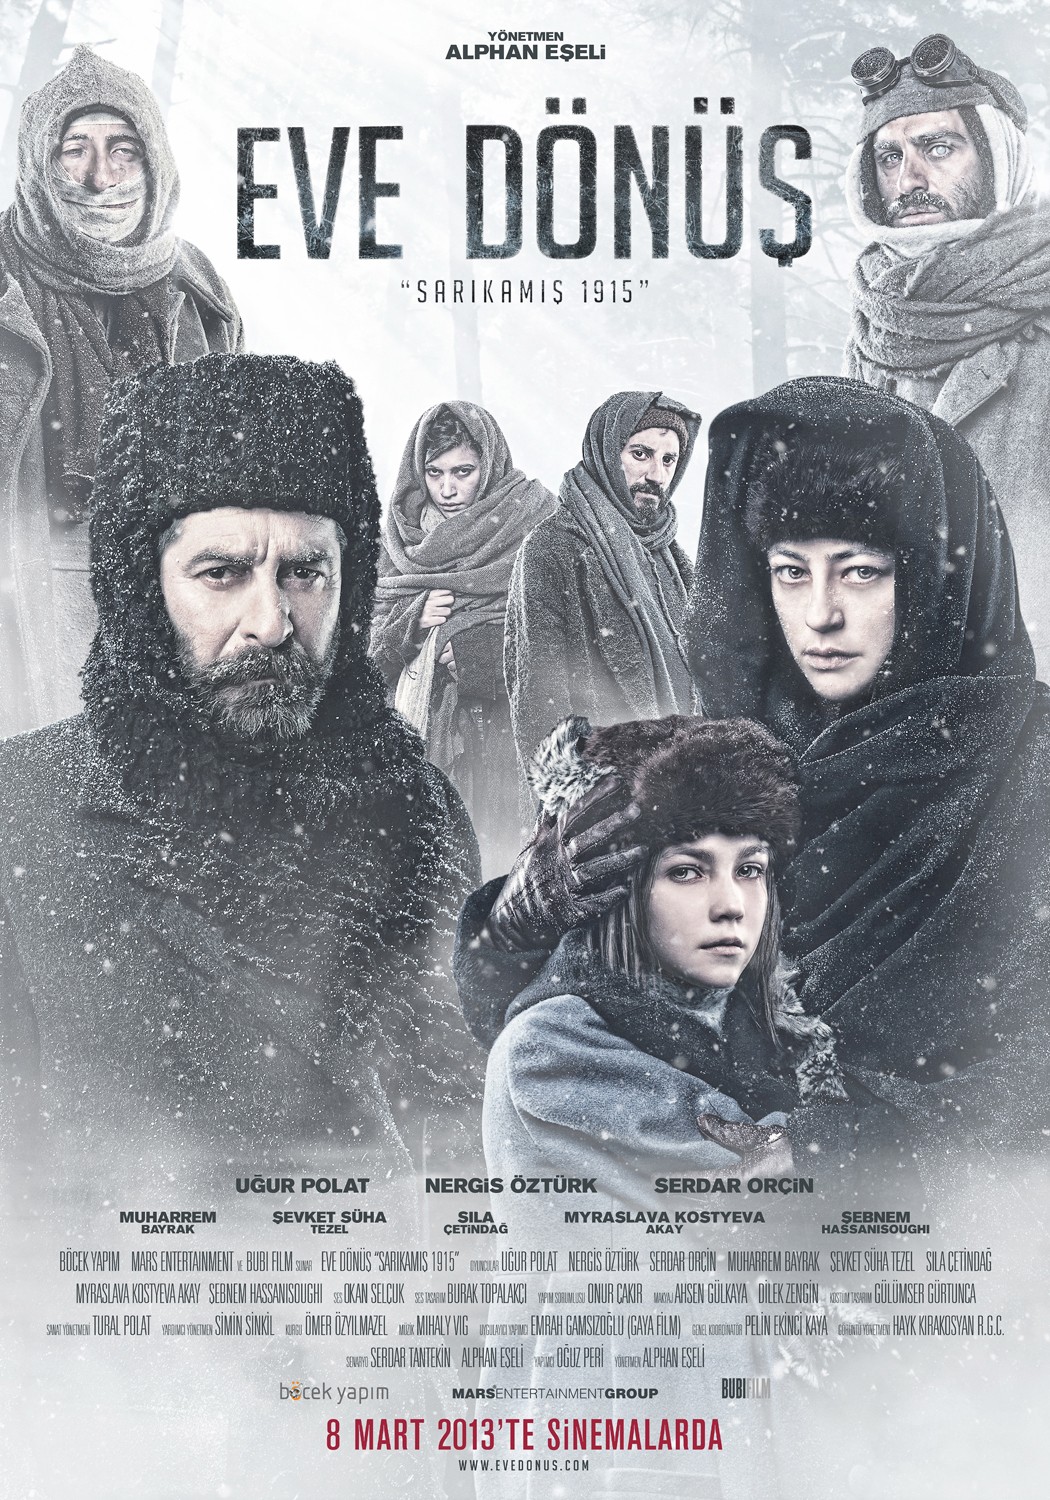 Extra Large Movie Poster Image for Eve Dönüş 'Sarıkamış 1915' (#10 of 10)